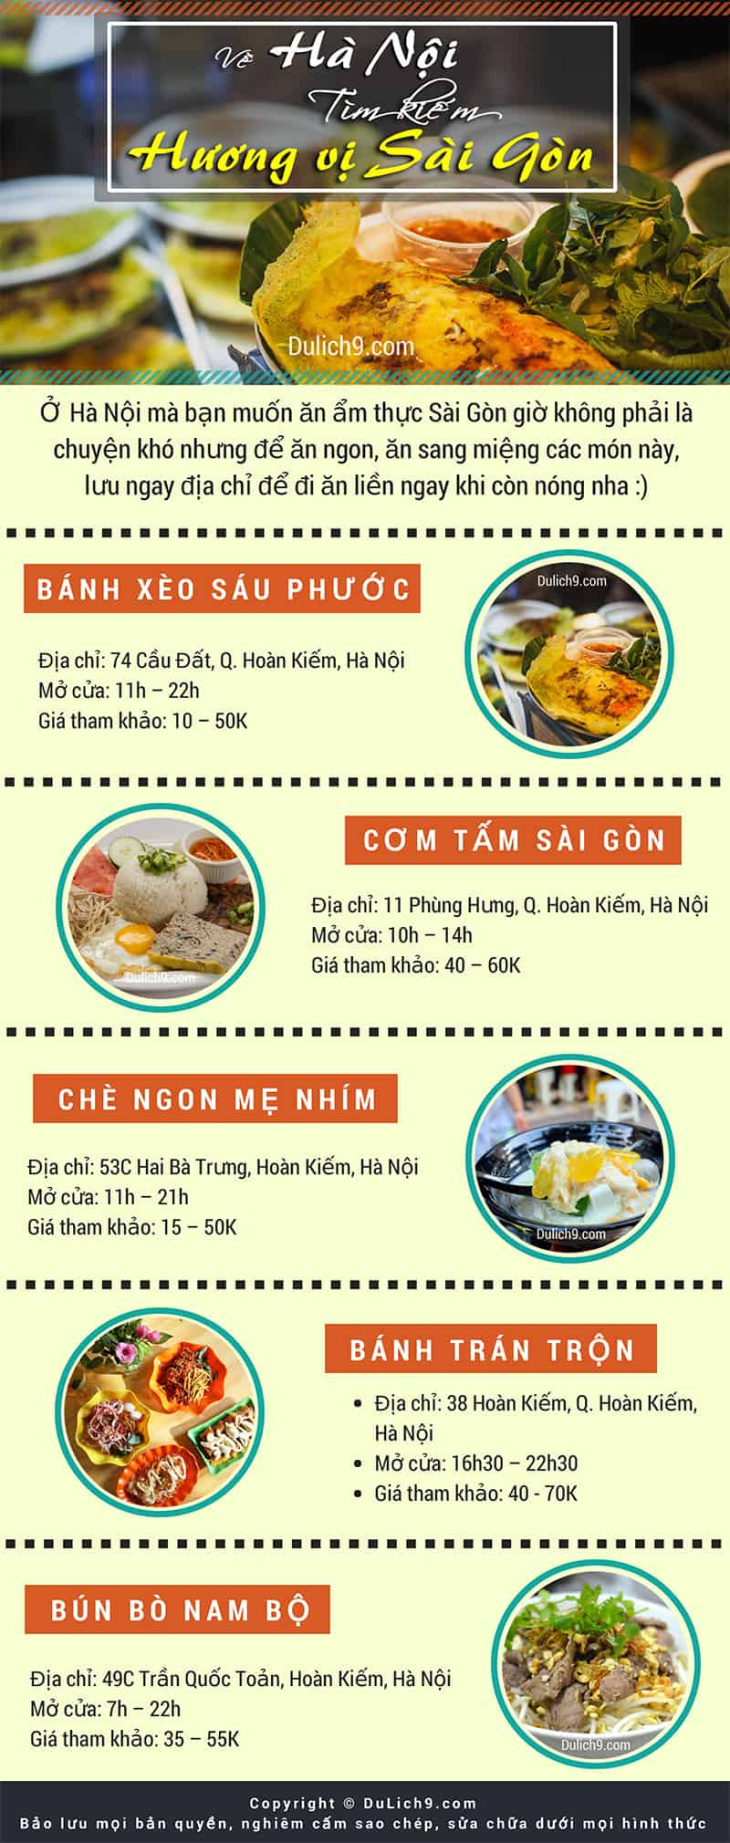 Infographic: Các đặc sản, món ăn nổi tiếng Sài Gòn ở Hà Nội, Món Ngon